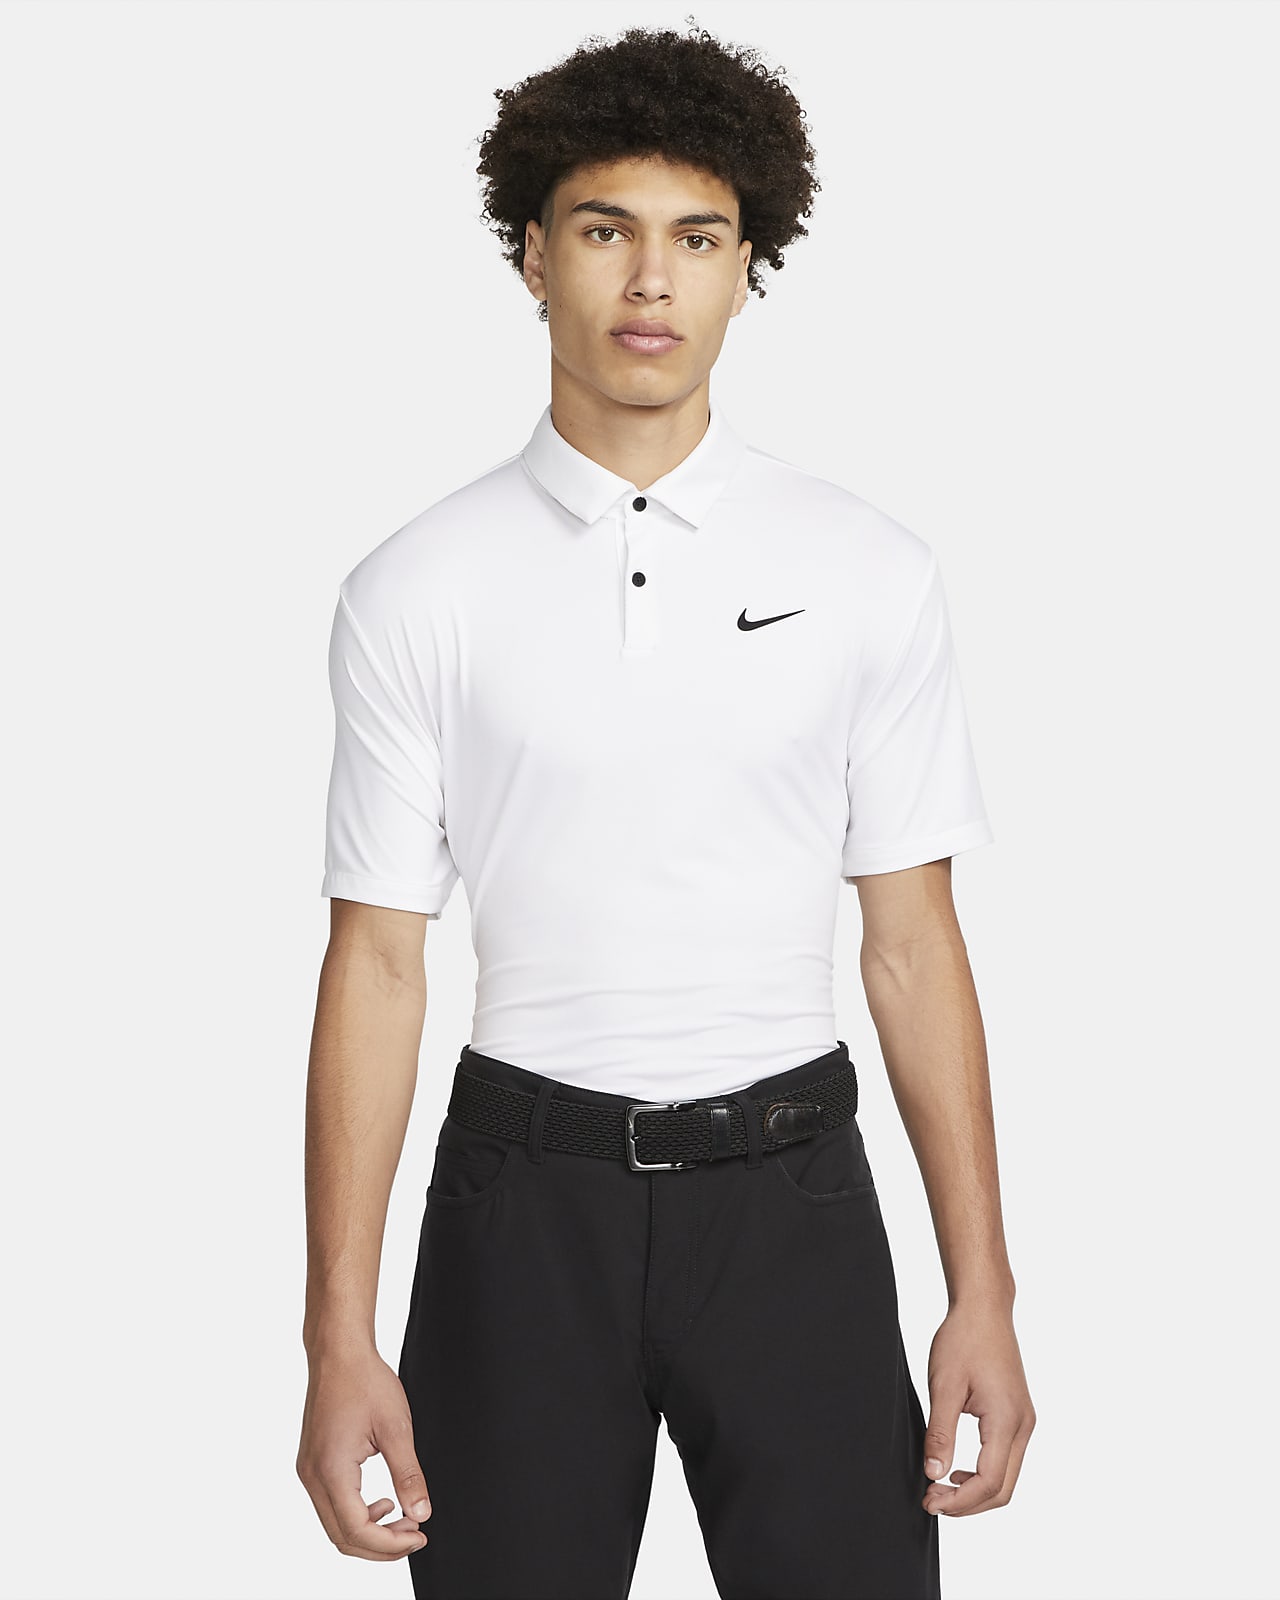 Ανδρική μονόχρωμη μπλούζα πόλο για γκολφ Nike Dri-FIT Tour